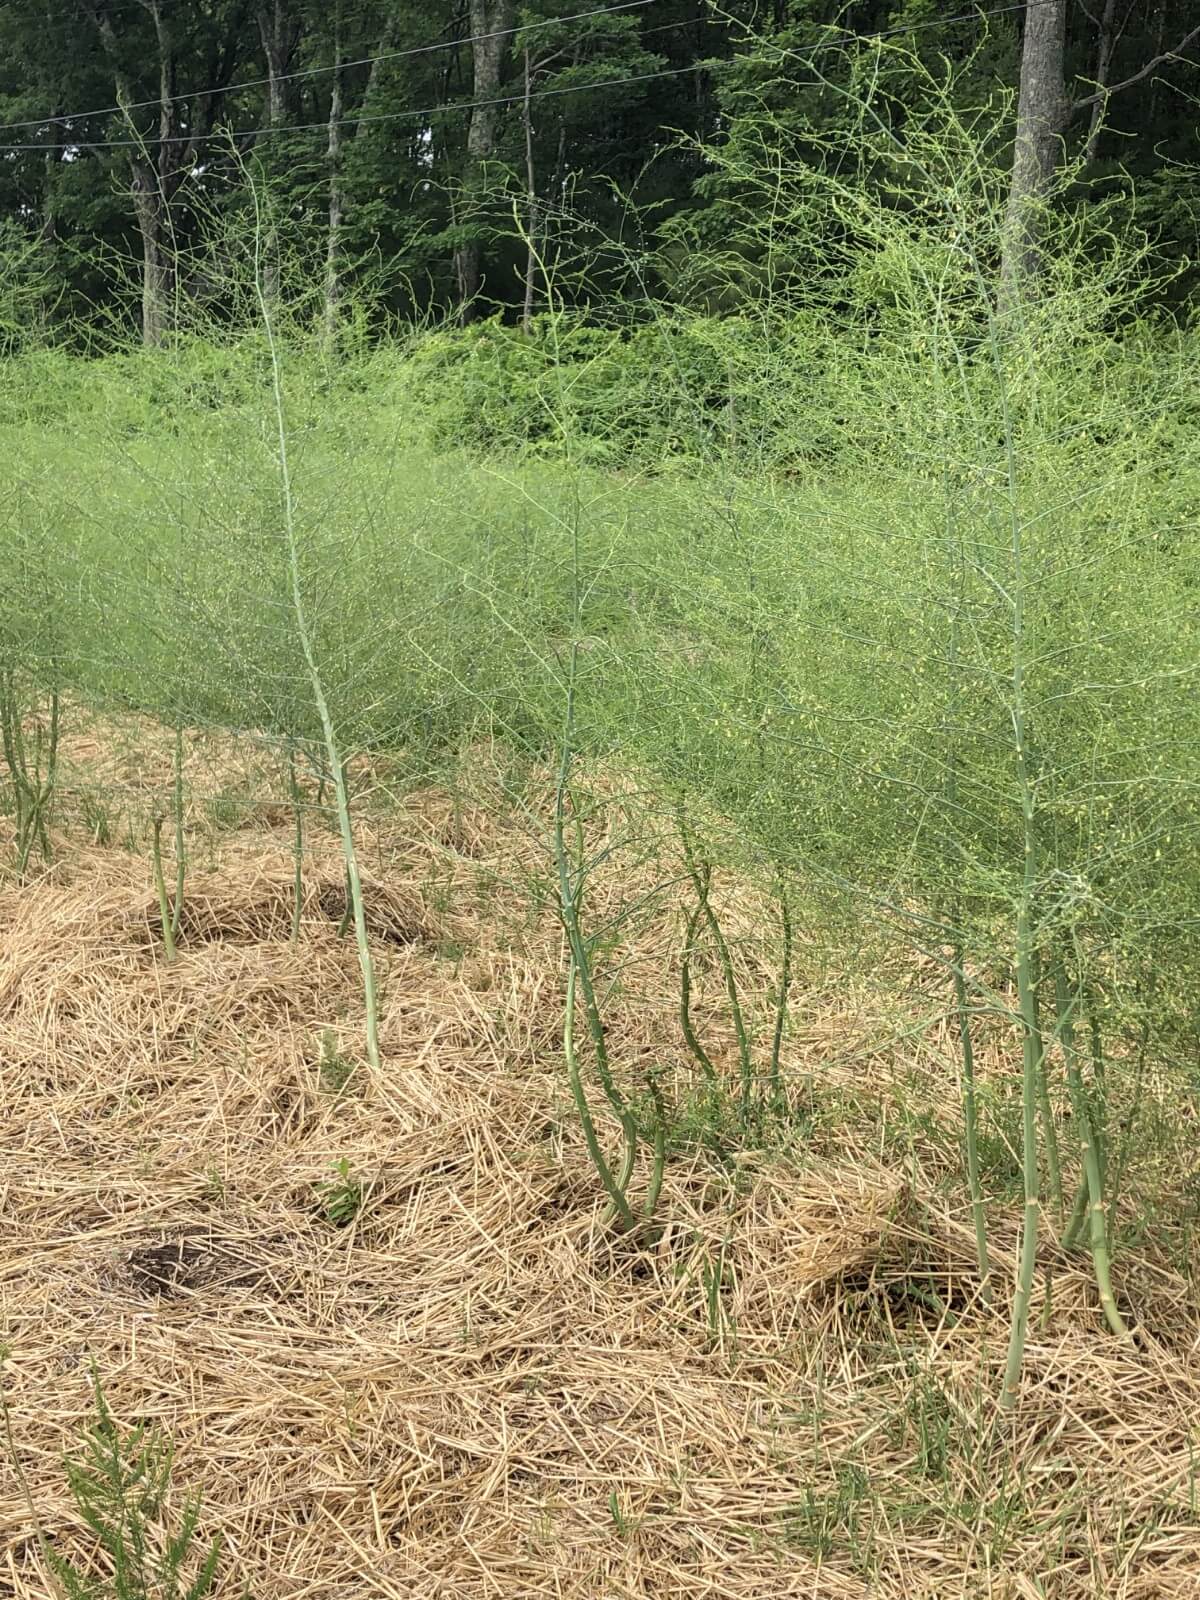 mature asparagus plants